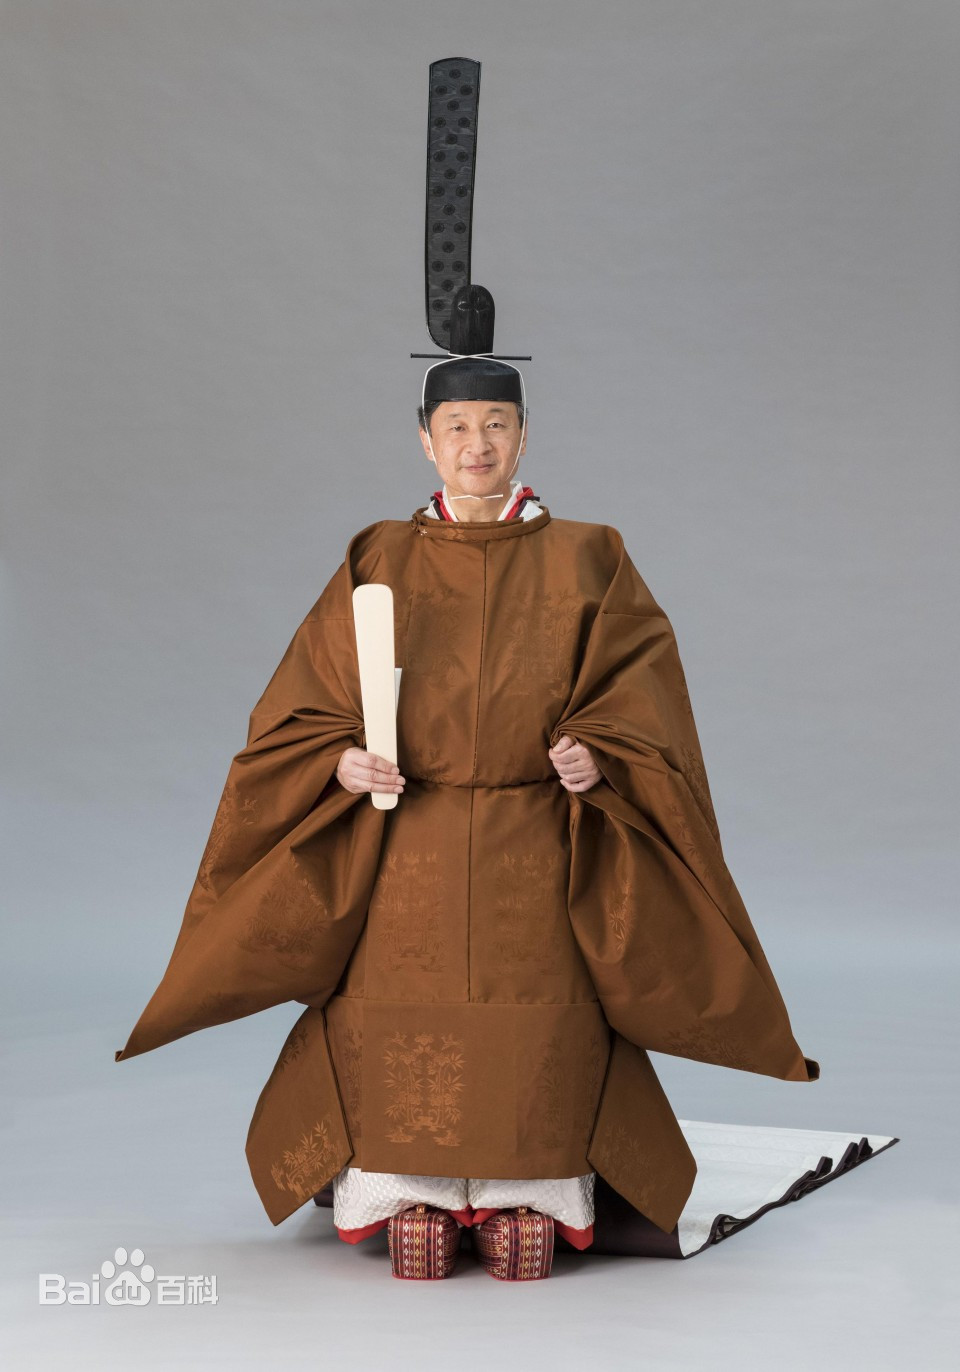 日本天皇号称"万世一系",自公元前660年第1代神武天皇以来,绵延至今.